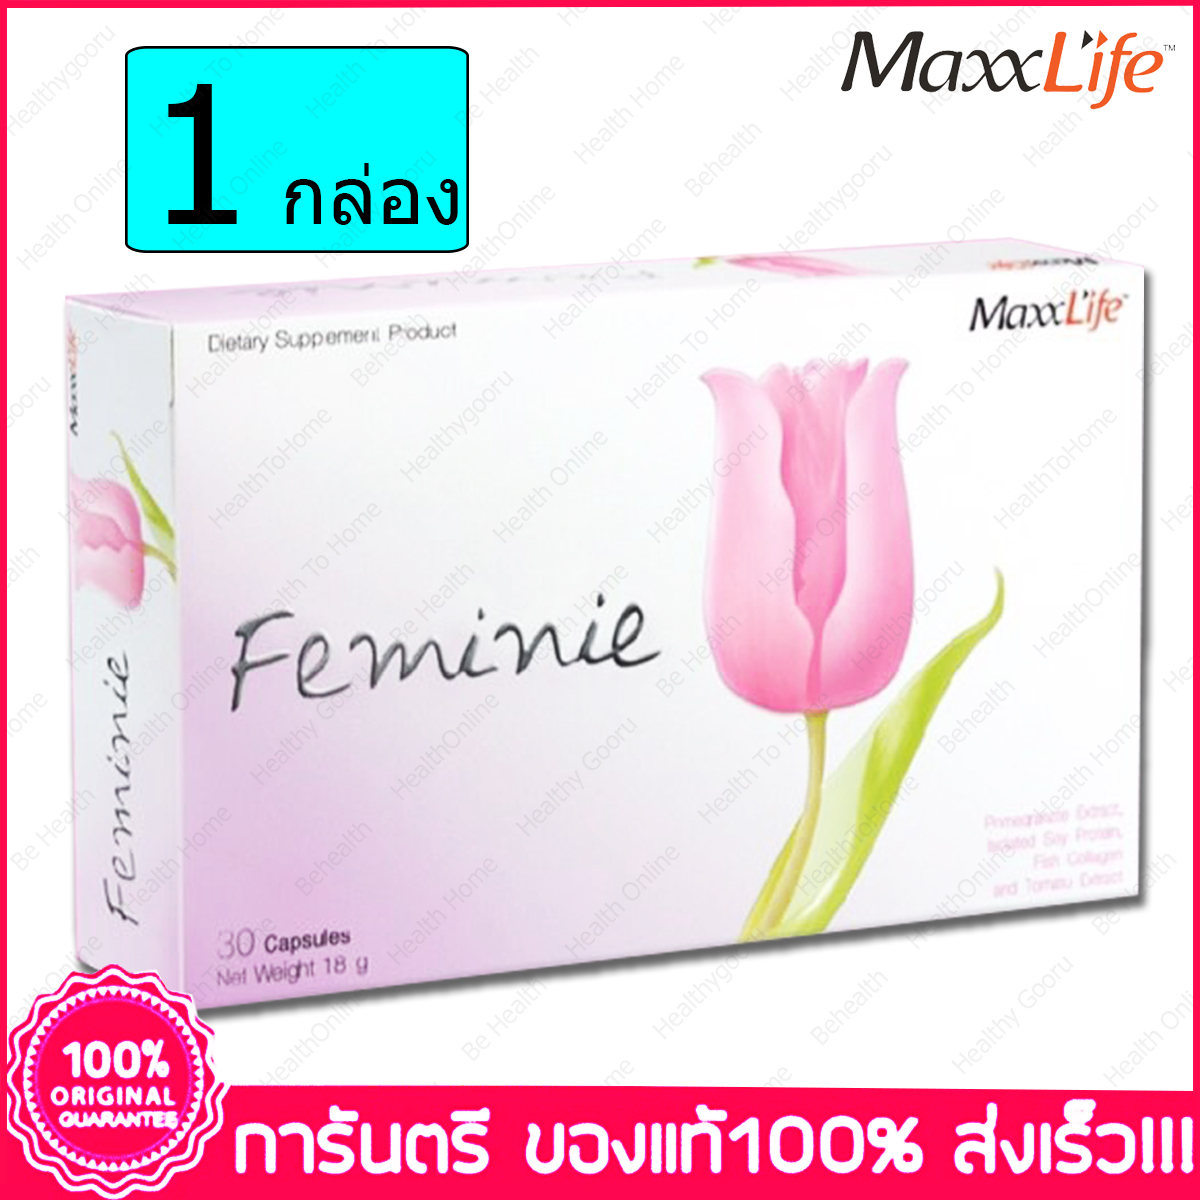 แมกไลฟ์ เฟมินี Maxxlife Feminie 30 แคปซูล(Capsules) X 1 กล่อง(Boxs)